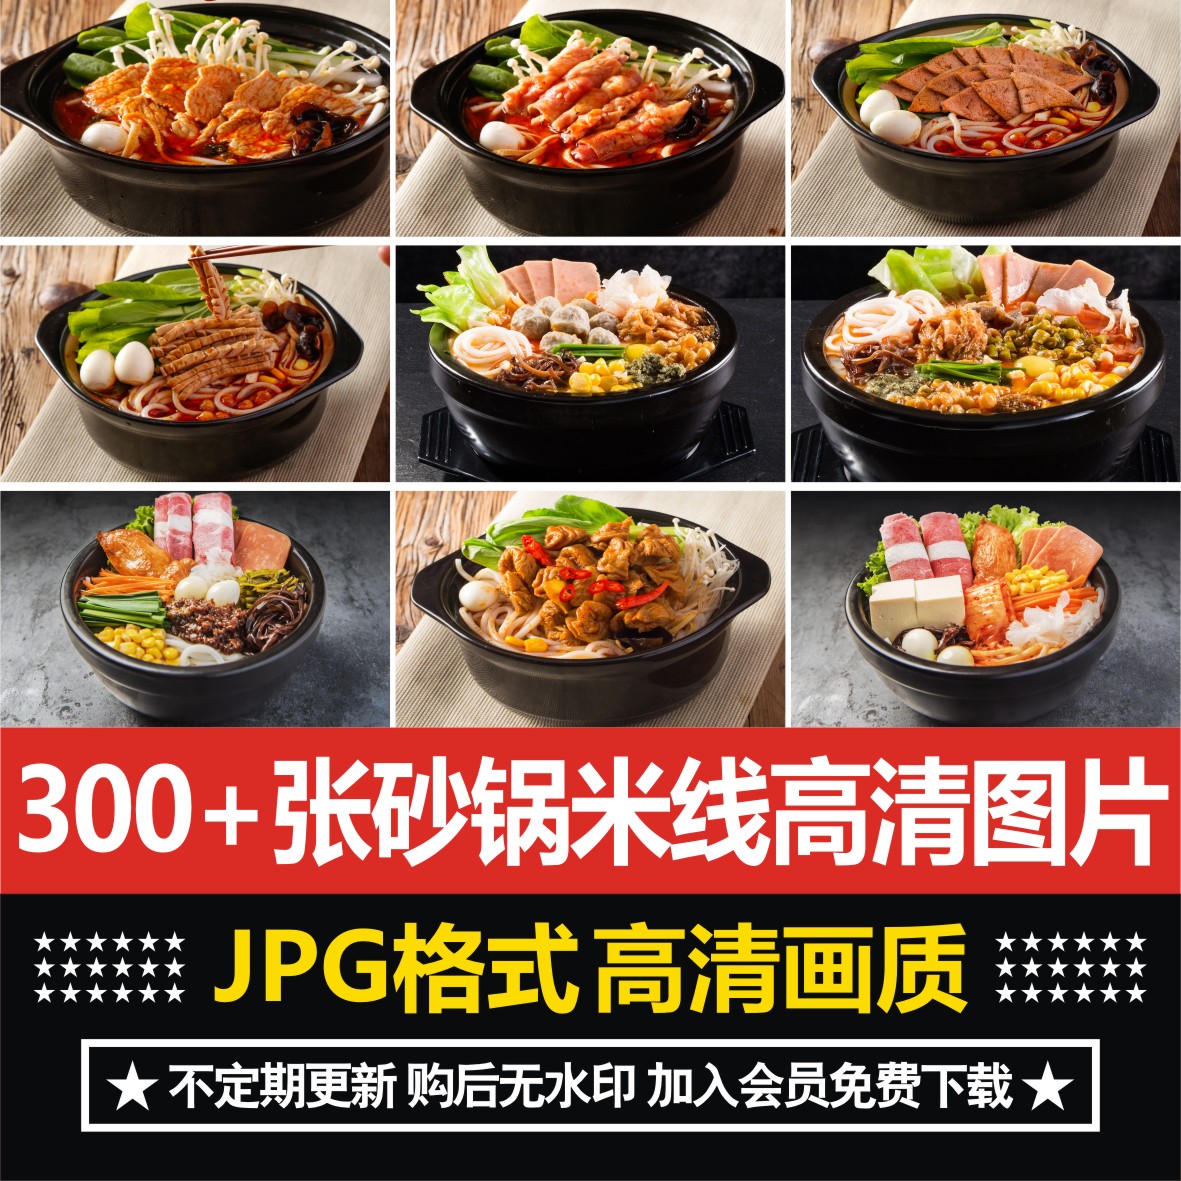 砂锅米线外卖图片过桥米线小锅米粉面食店美团菜品高清海报素材